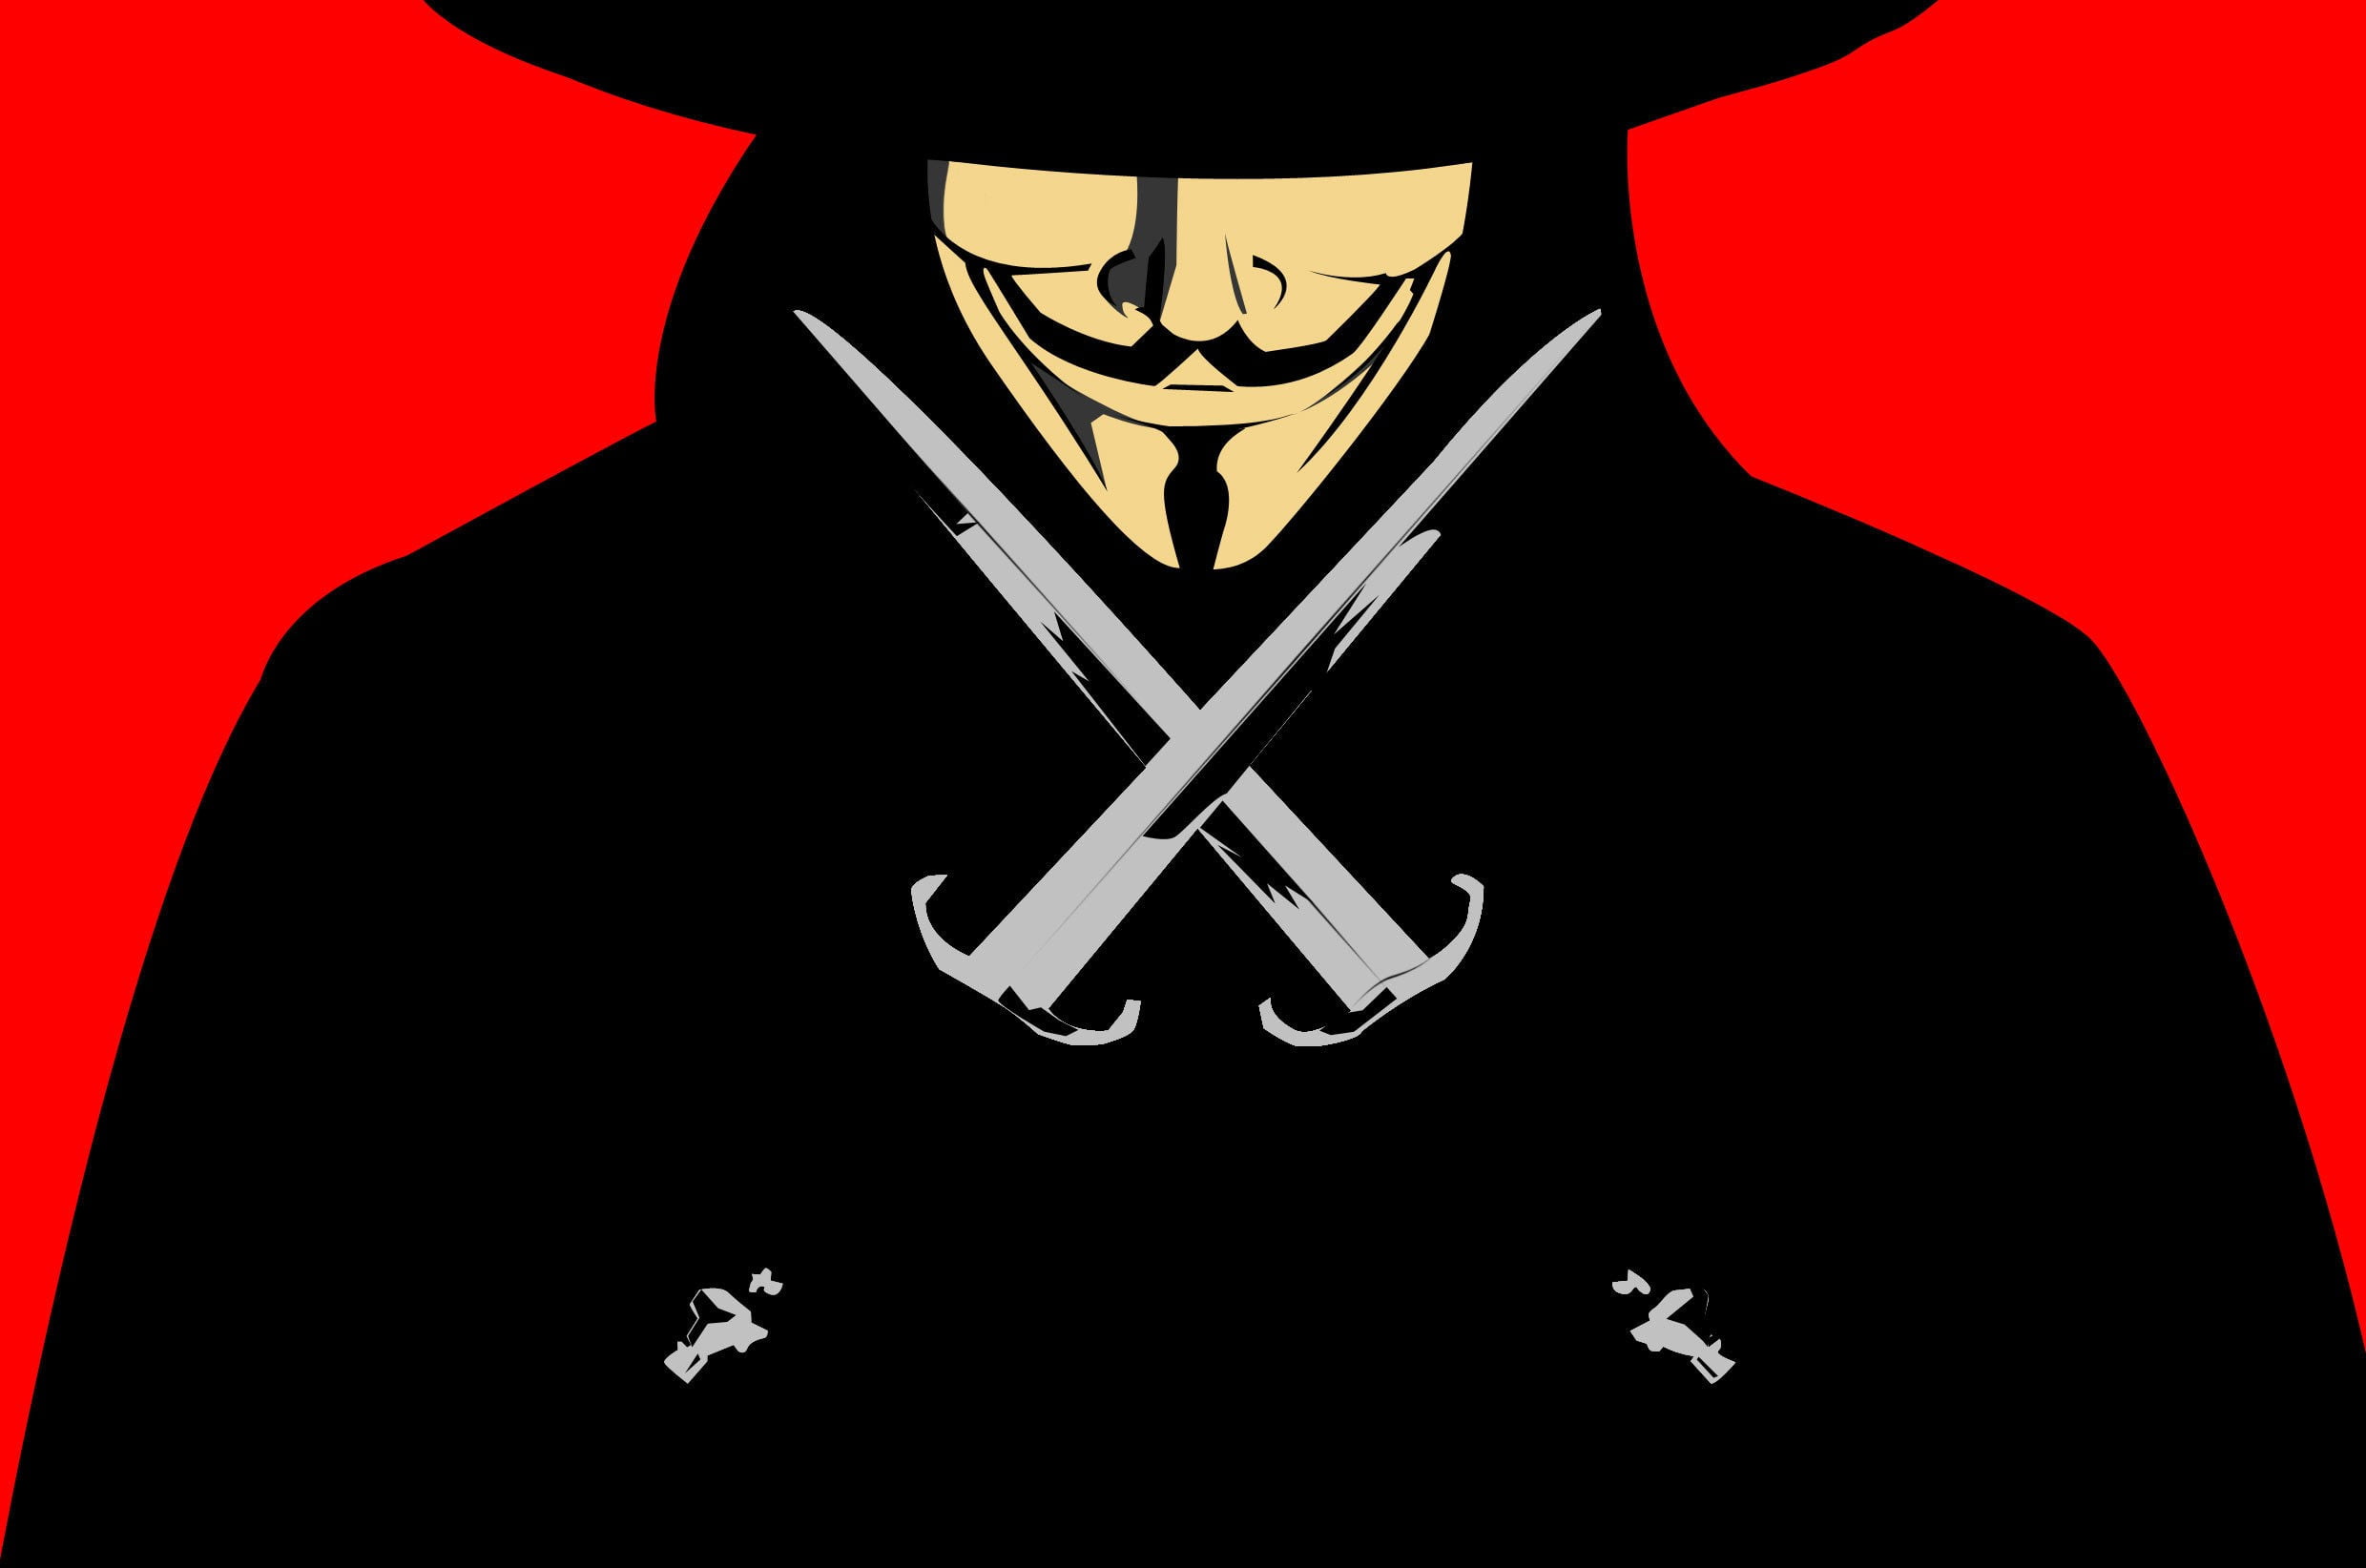 V for Vendetta Fawkes Guy digital wallpaper, V for Vendetta, movies